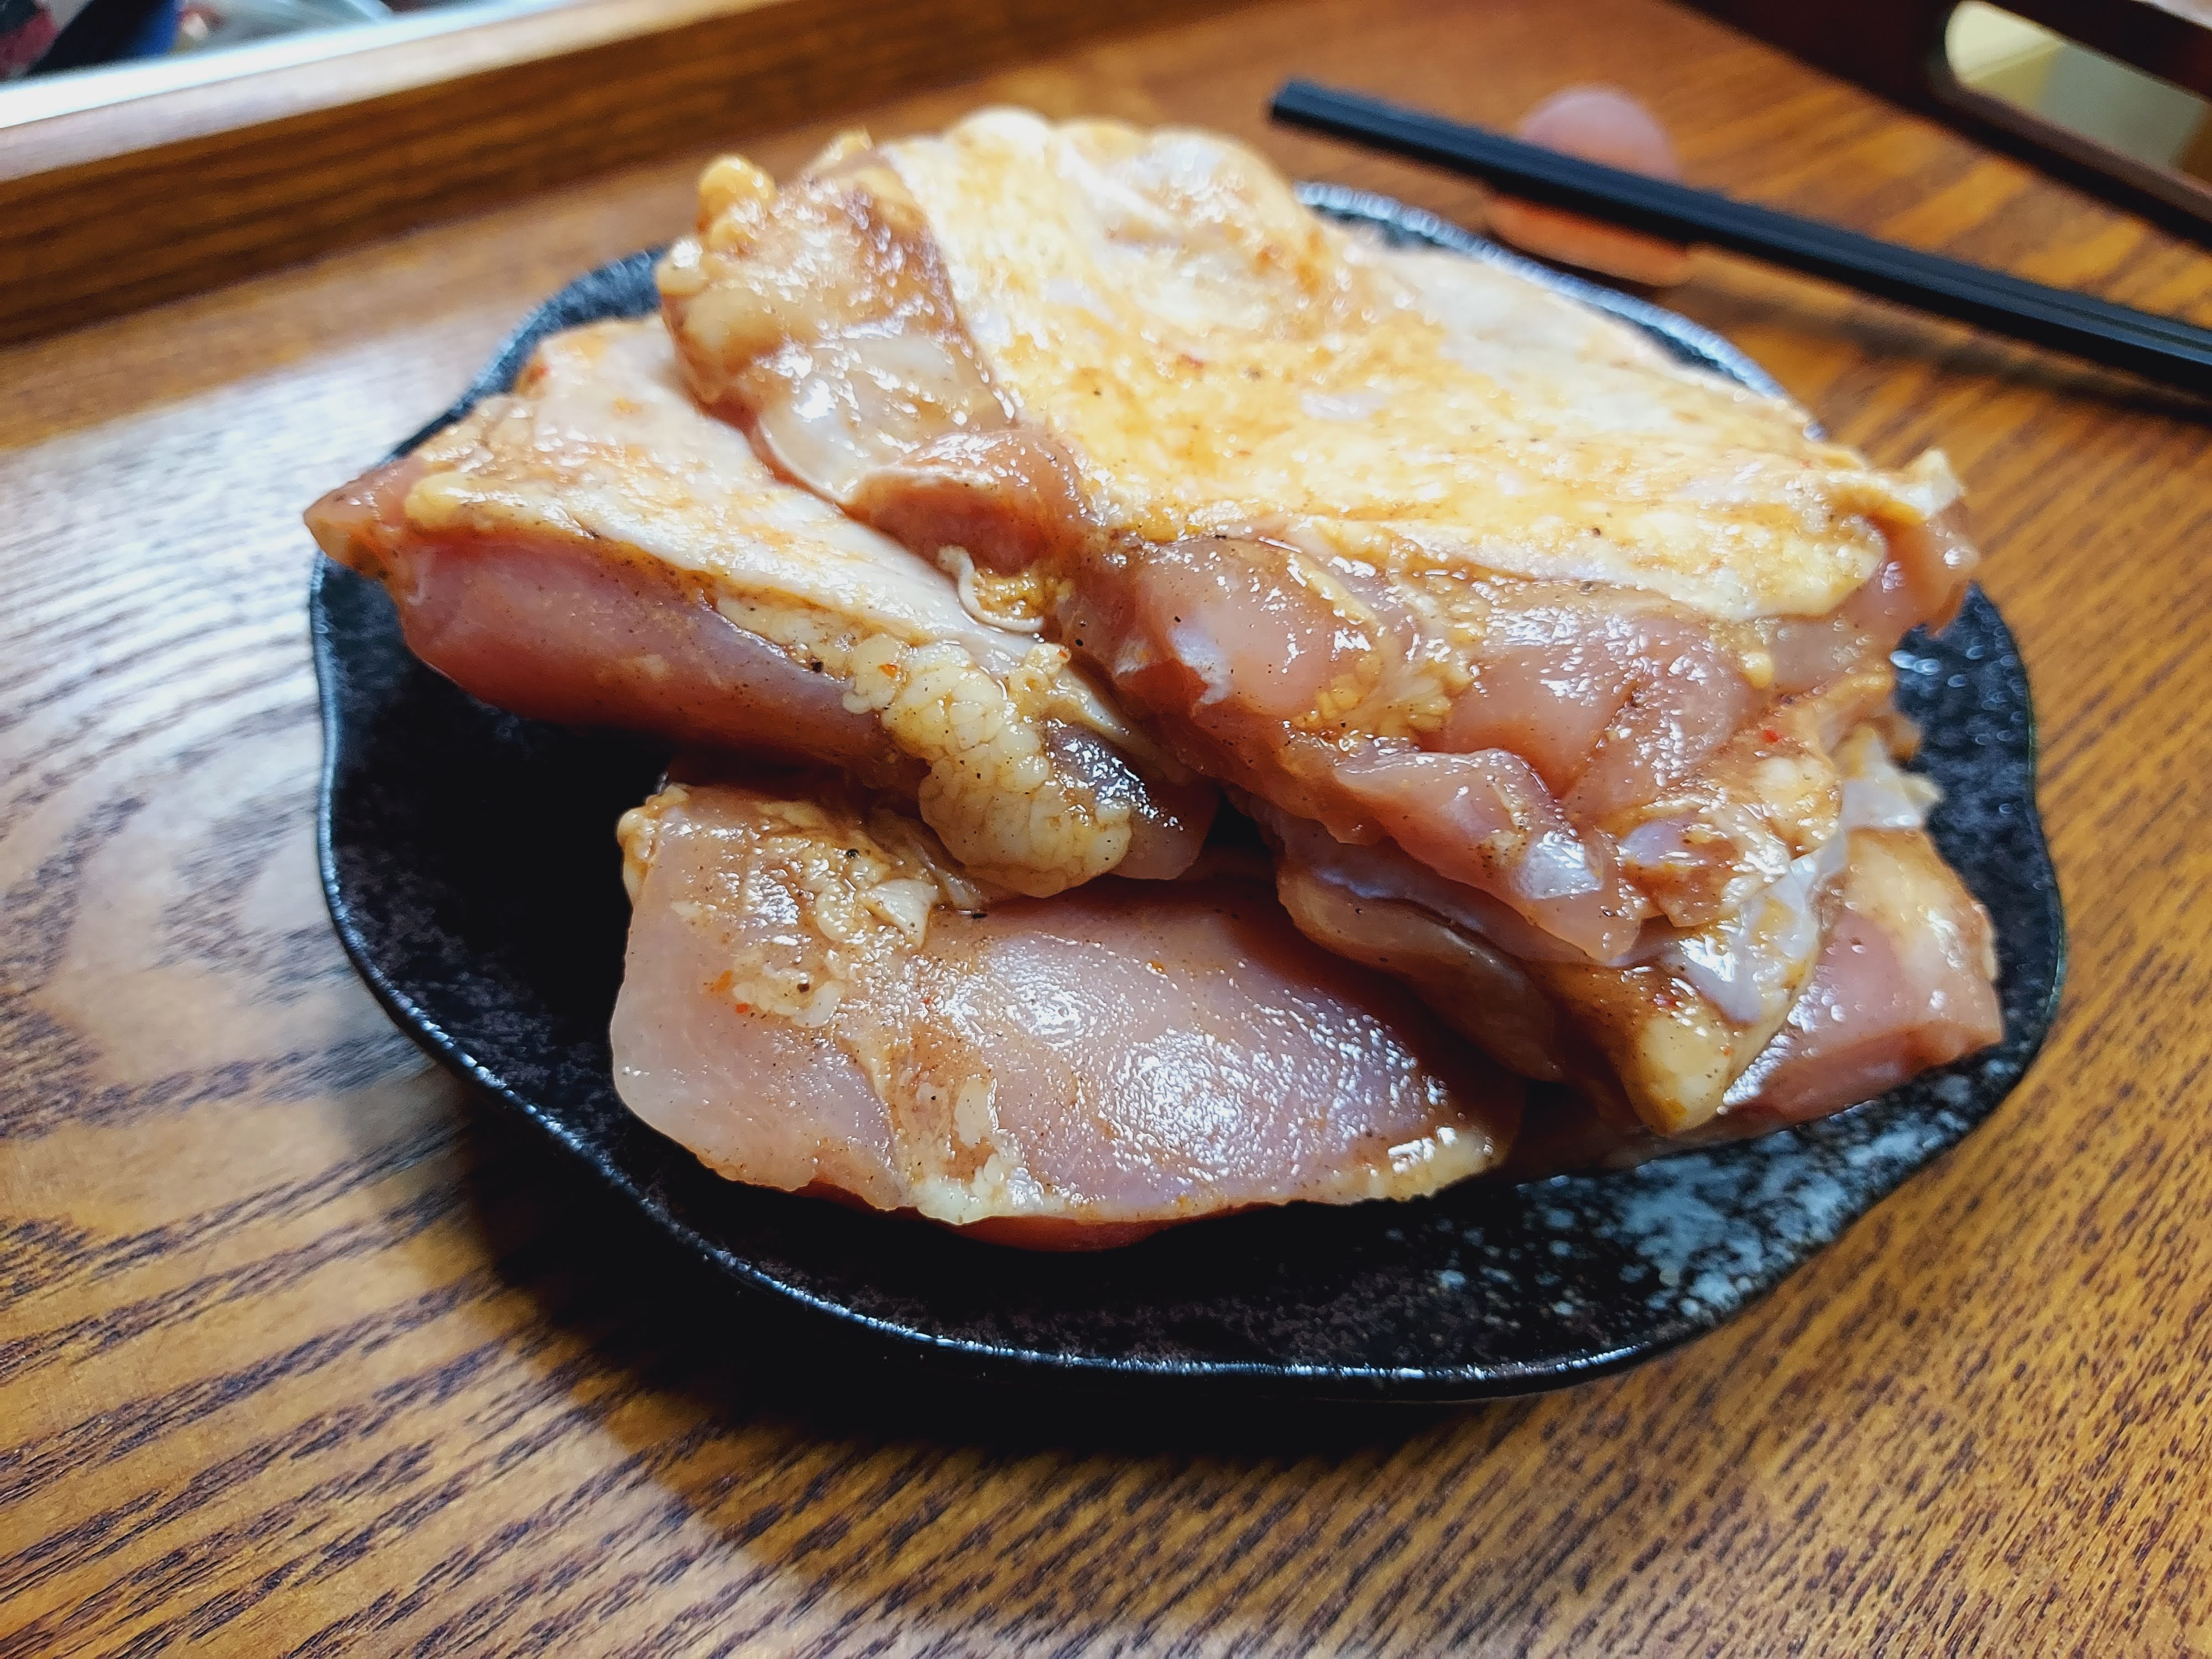 川味椒麻雞腿肉(去骨)(5入)【利津食品行】川味椒麻 雞腿肉 烤肉 生鮮 醃漬